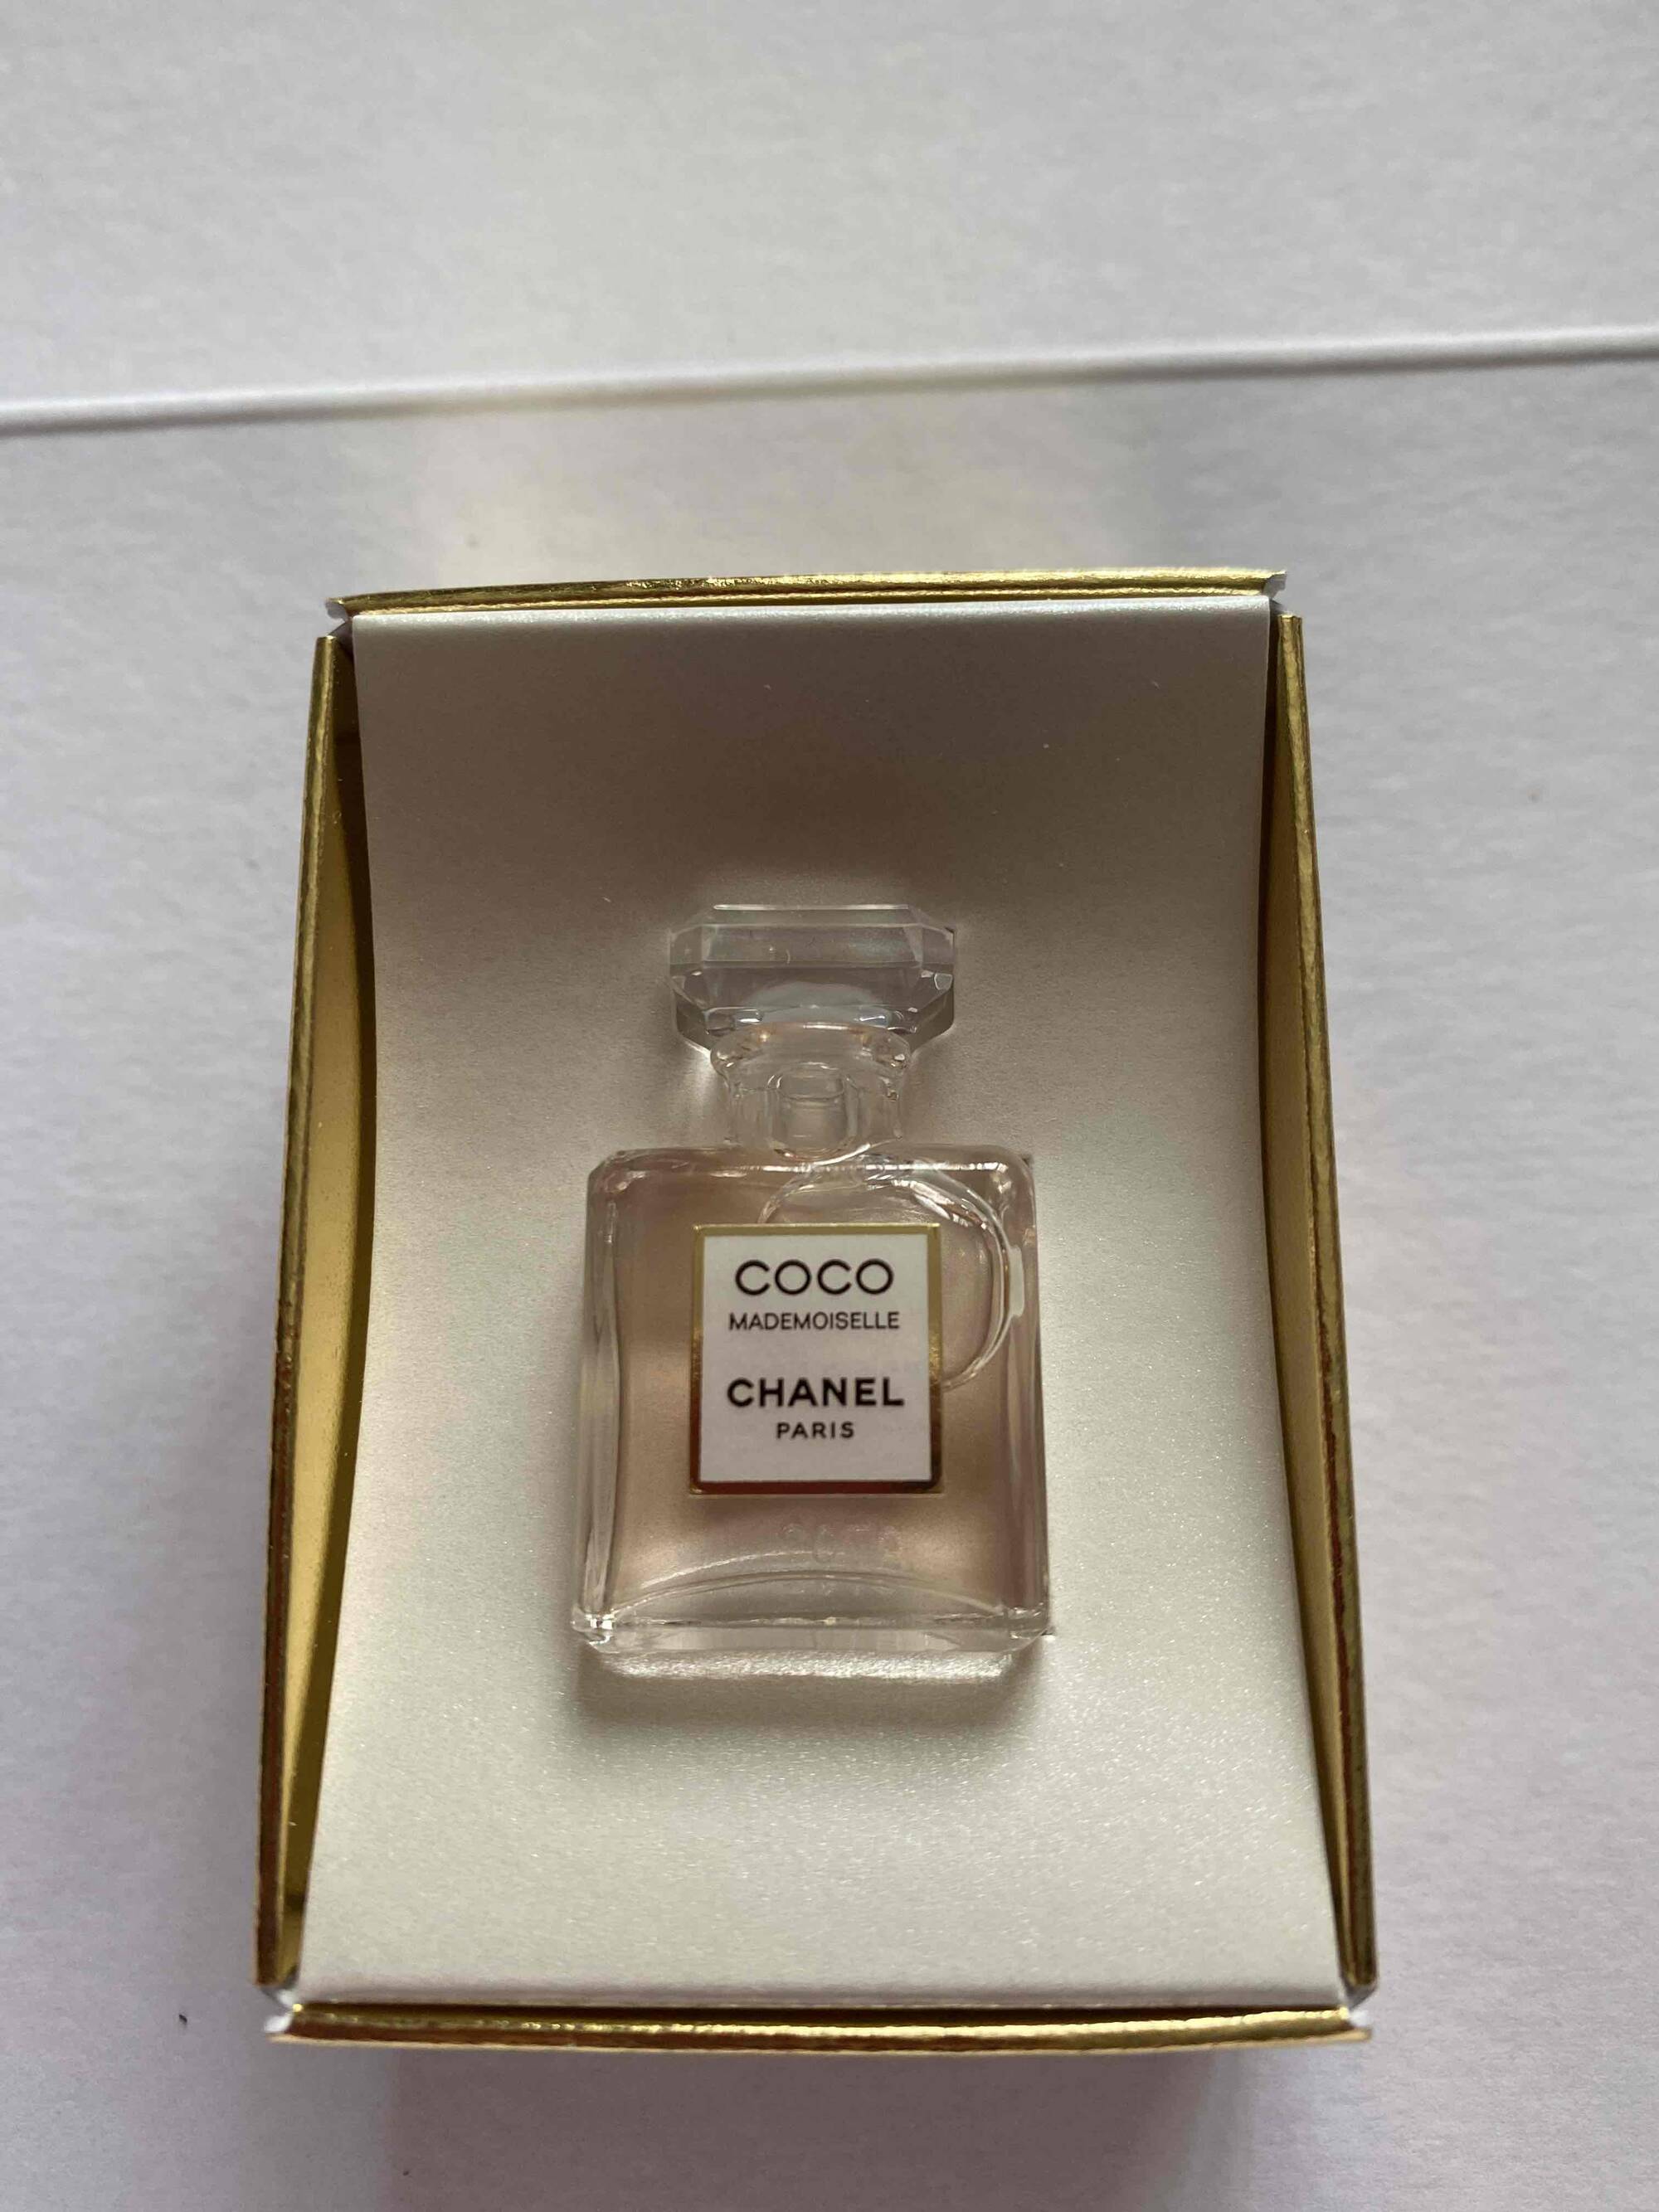 CHANEL - Coco Mademoiselle - Eau de parfum